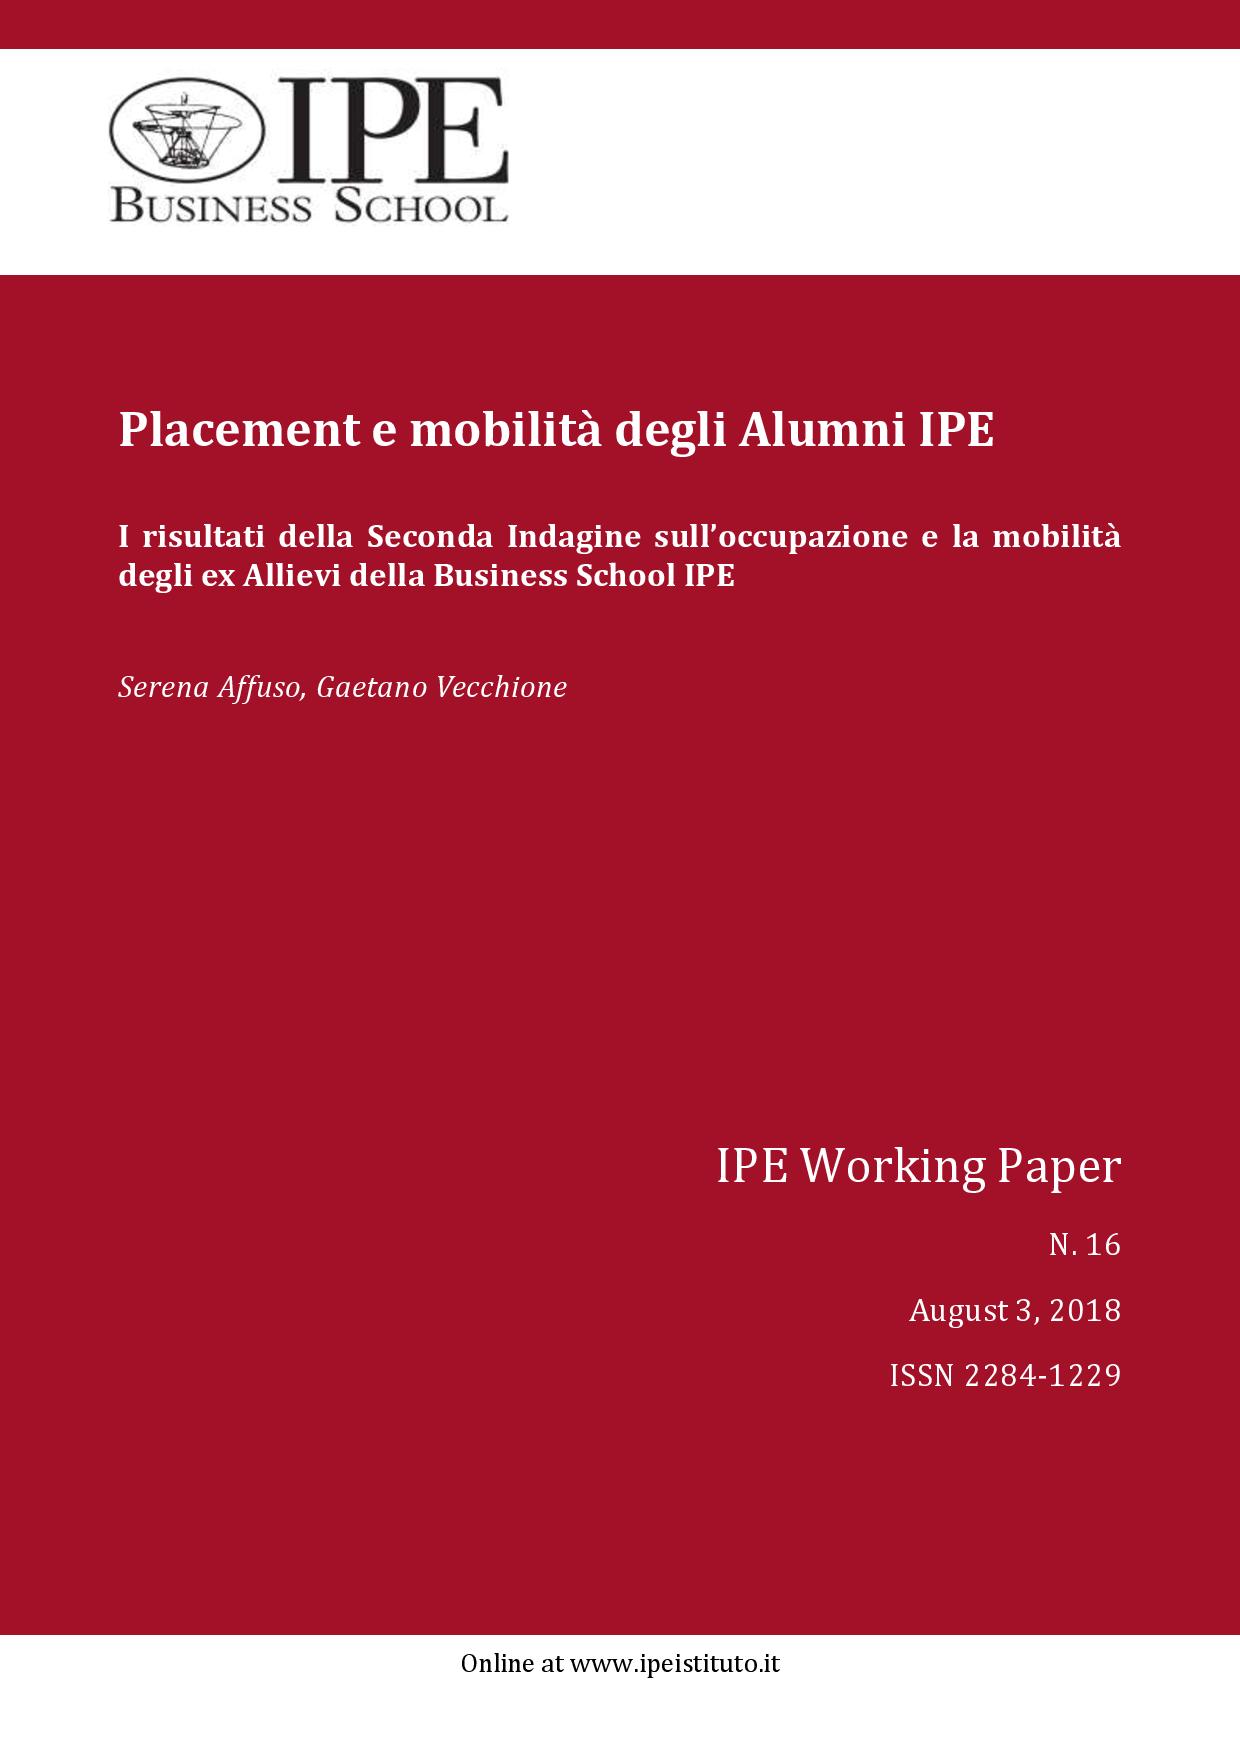 IPE Working Paper N.16/2018